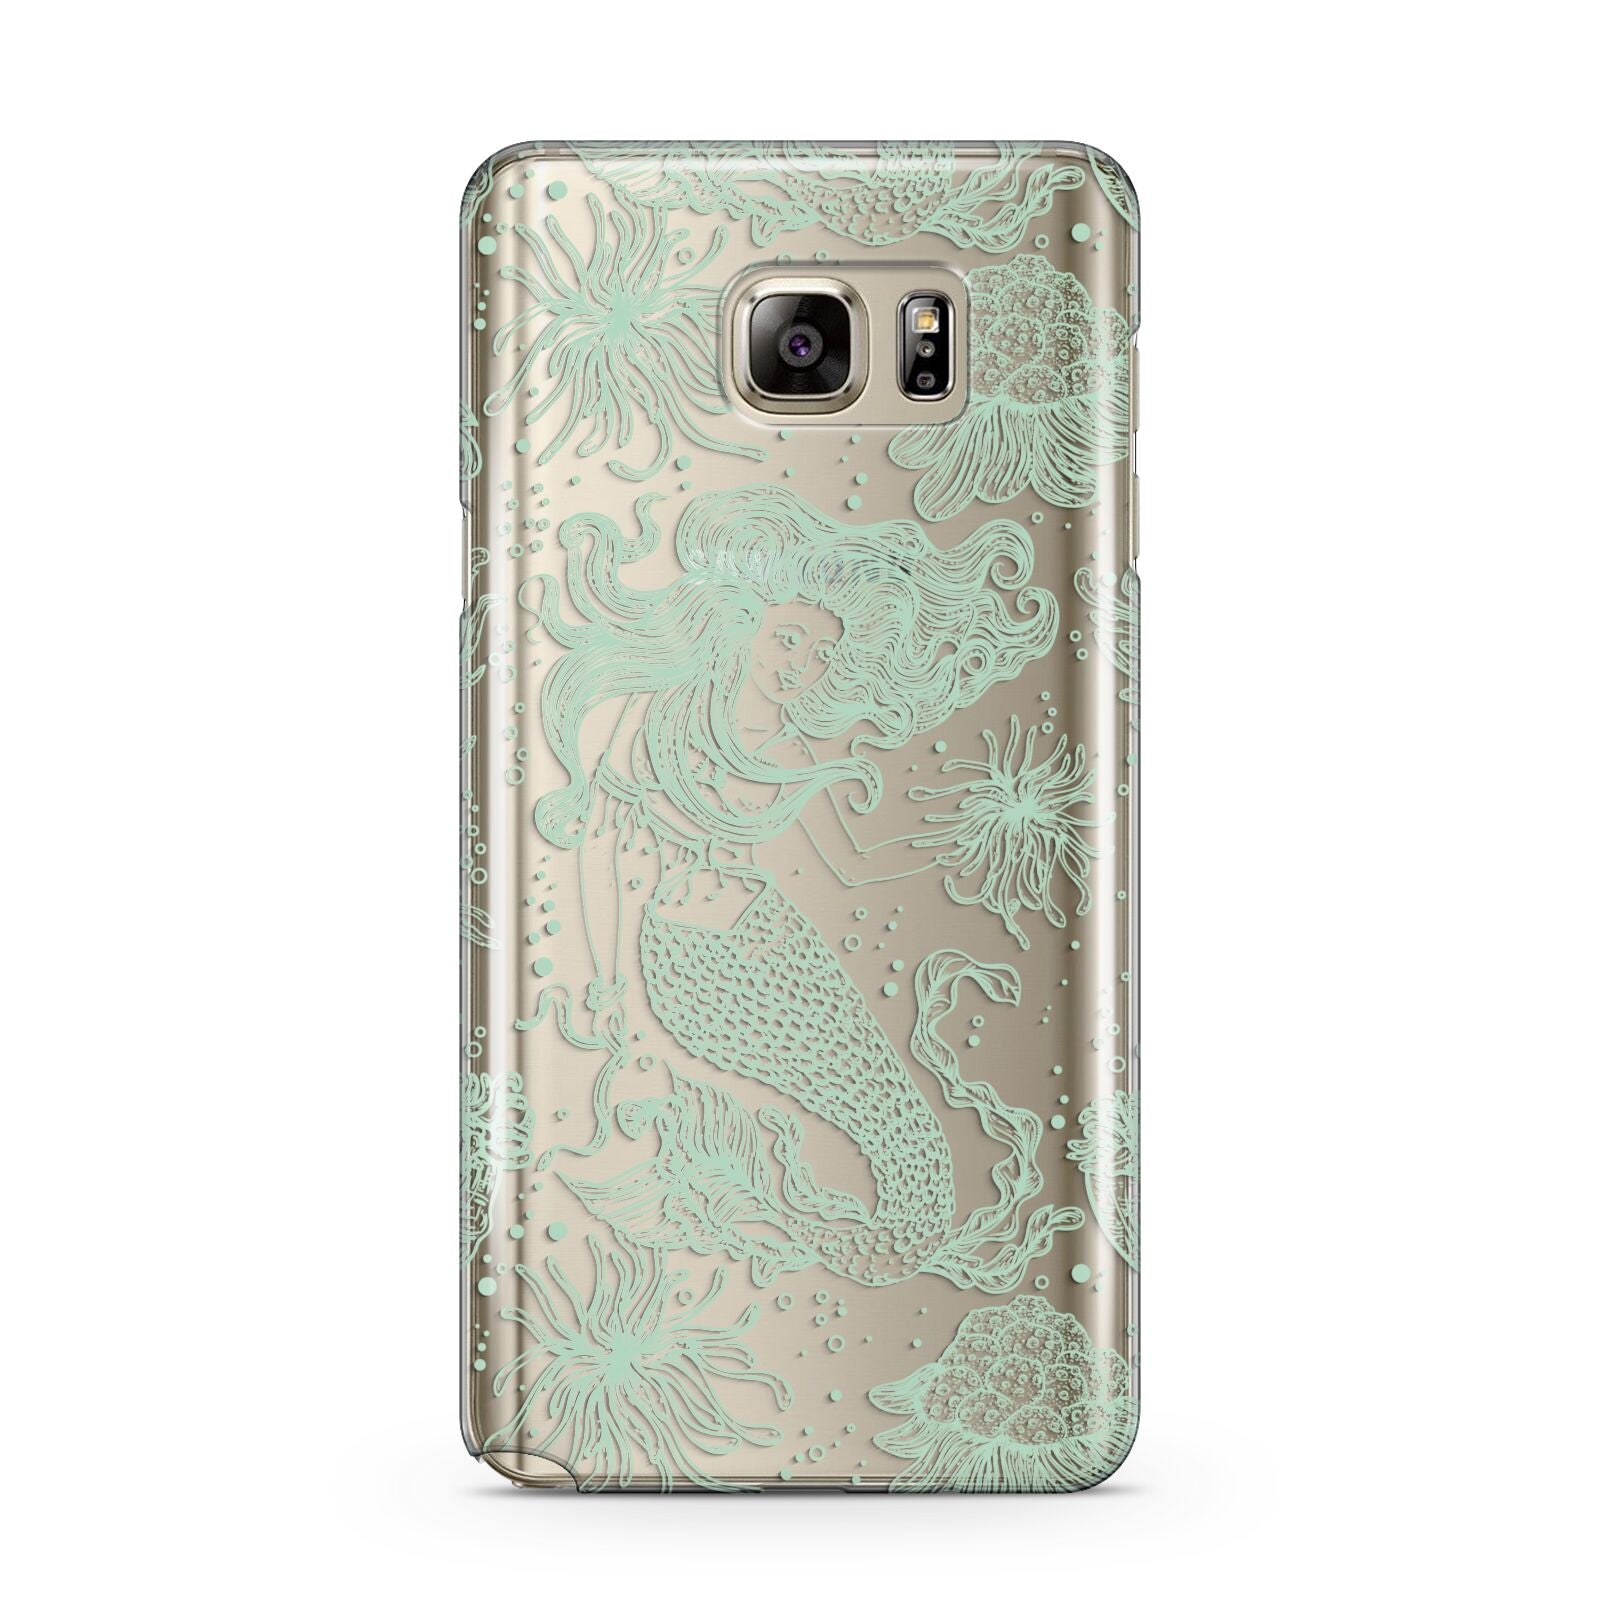 Sea Mermaid Samsung Galaxy Note 5 Case